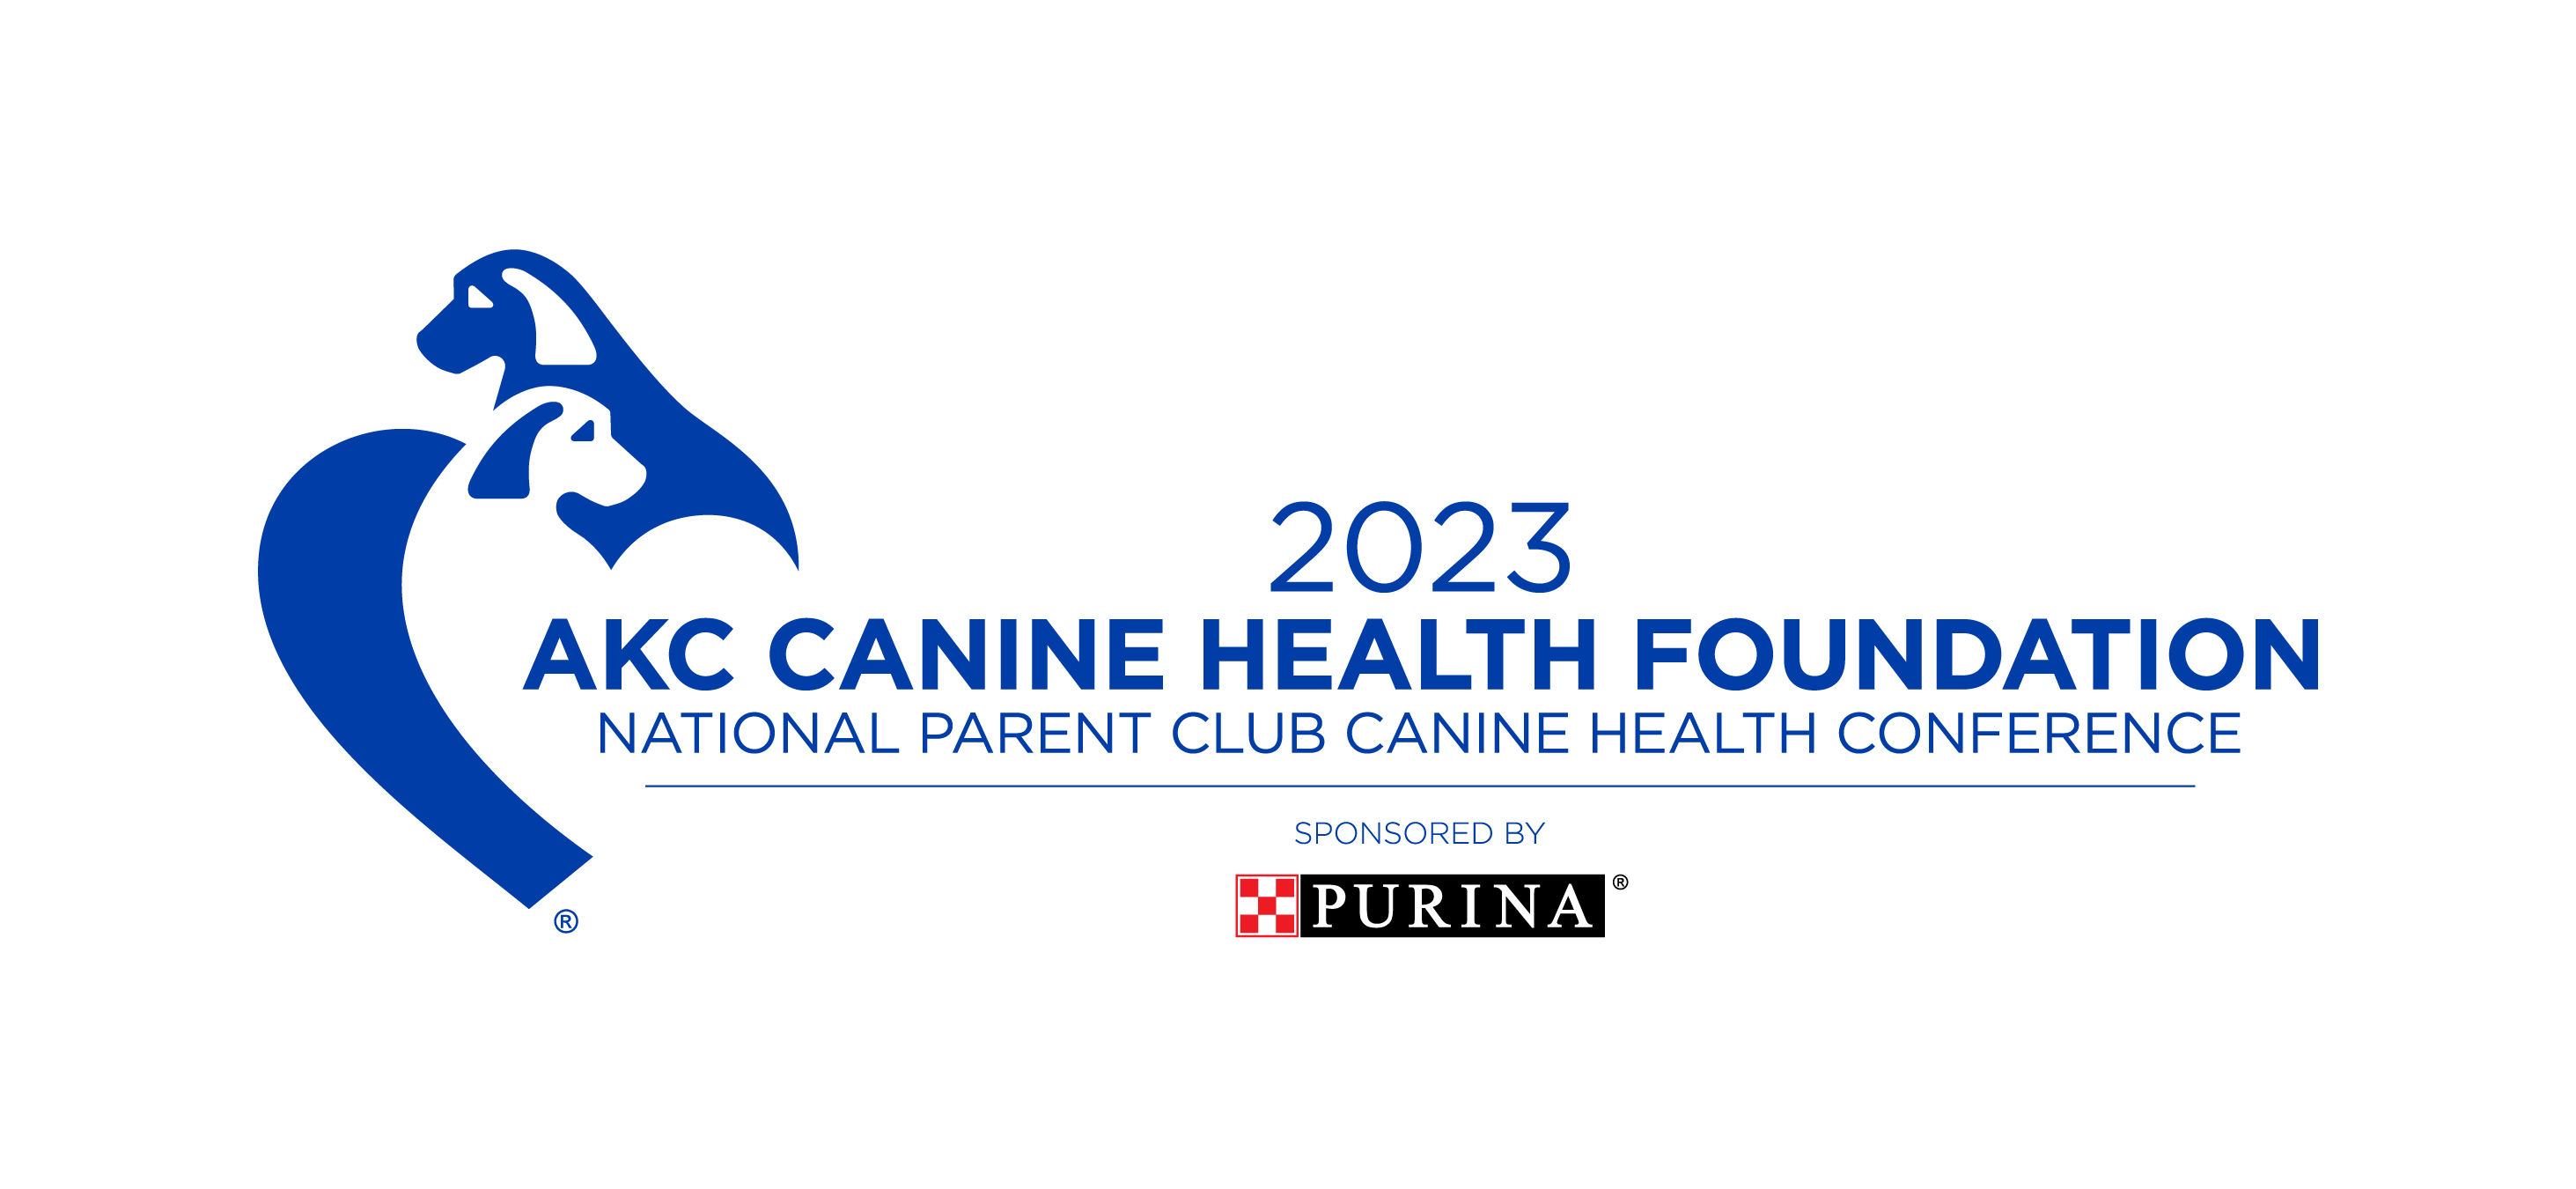 2023 NPCCHC logo